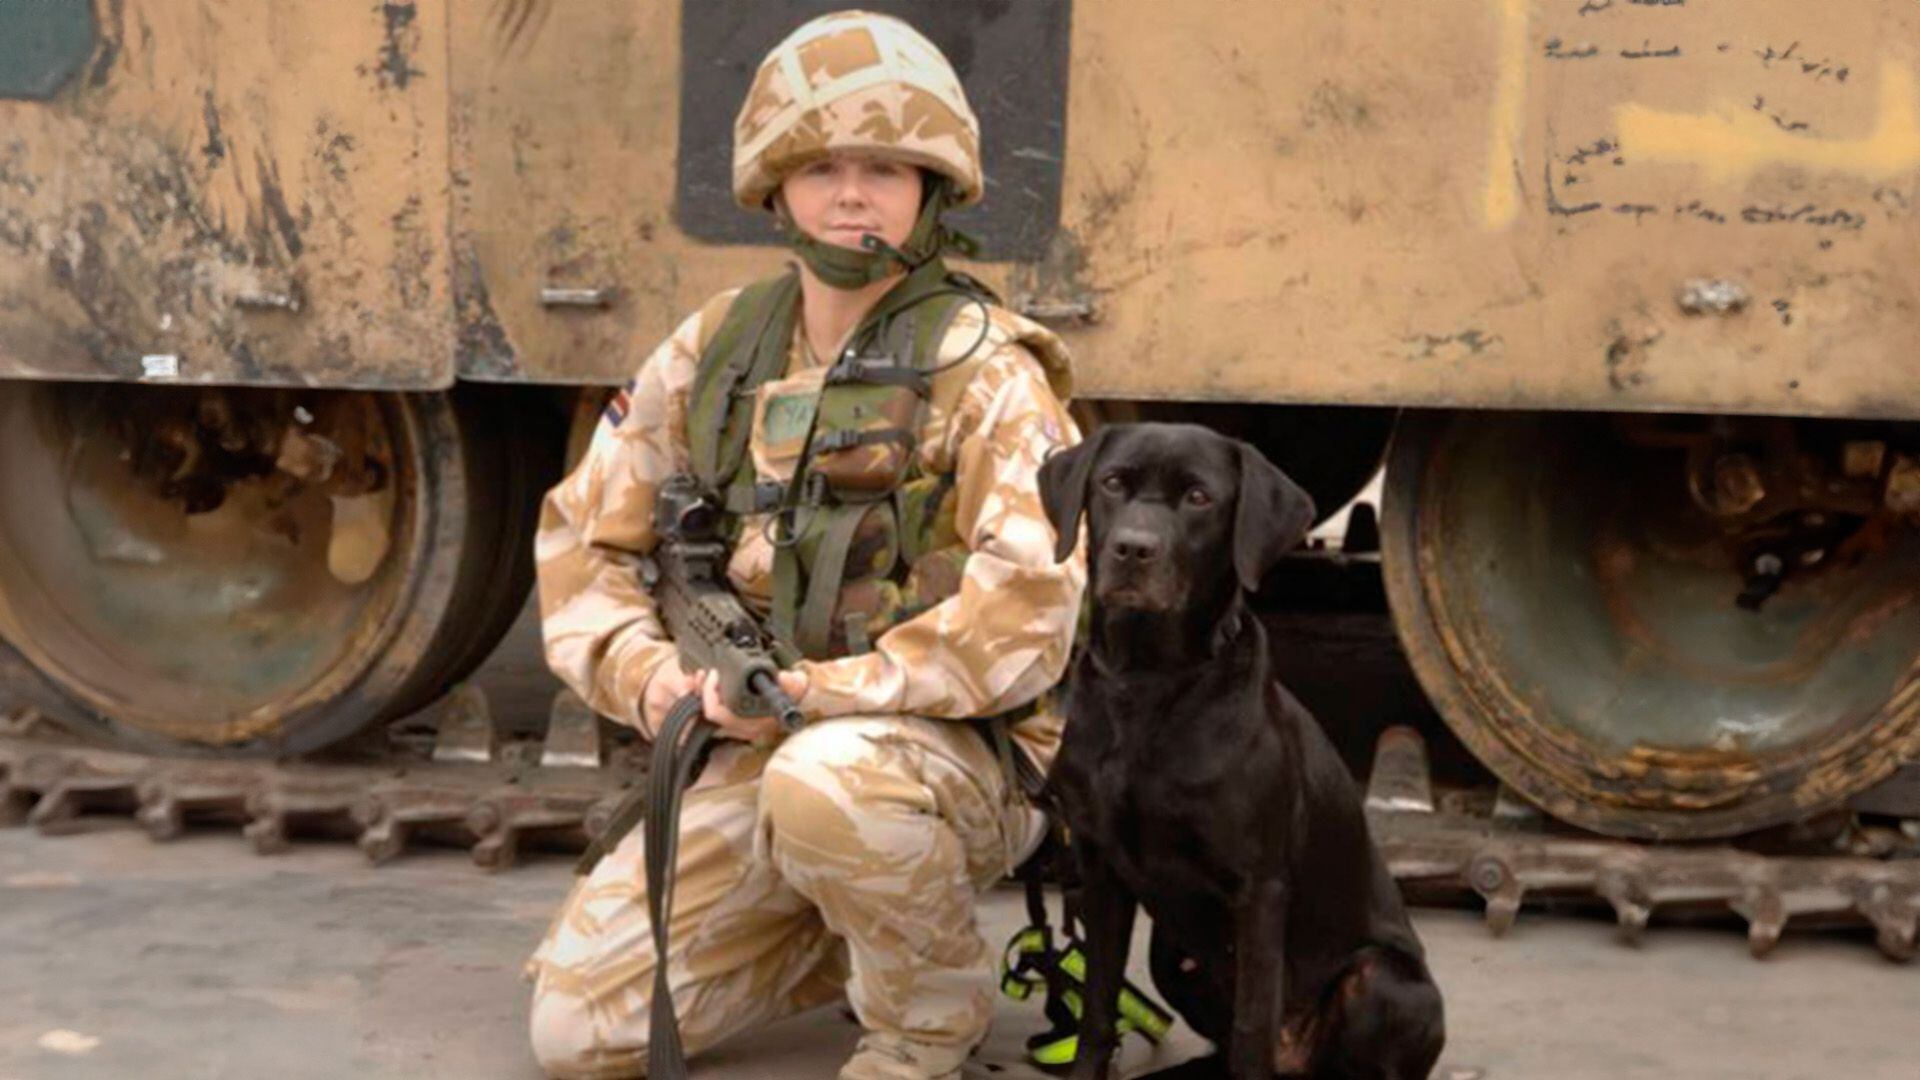 Sadie detectó un artefacto explosivo a las afueras de los cuarteles generales de la ONU en Kabul en 2005.  Sadie, perros, razas de perros, labrador, mascotas, animales, Héroes de guerra